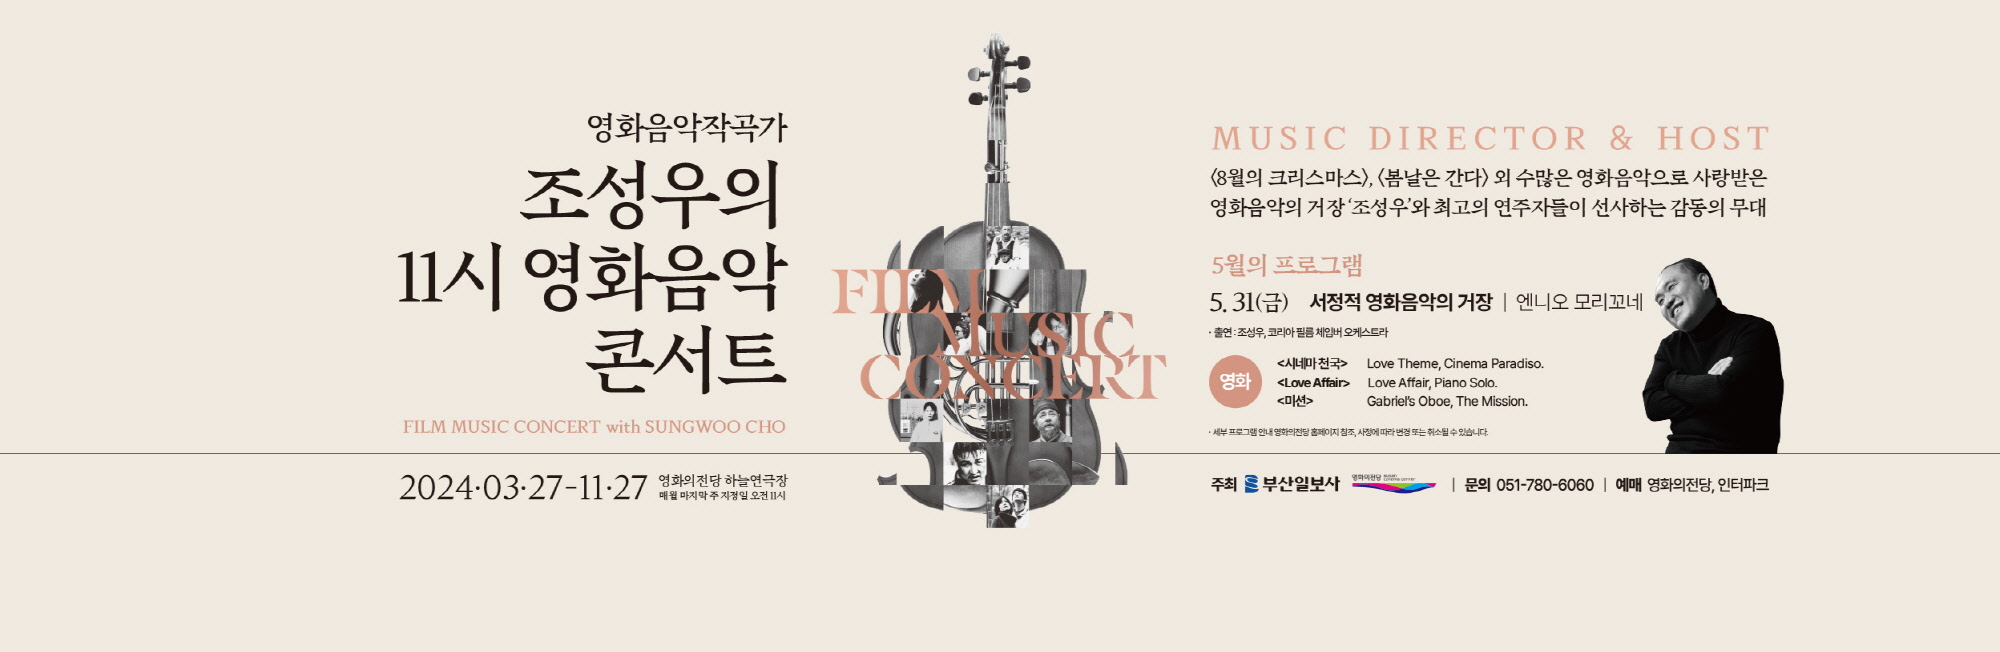 영화음악작곡가 조성우의 11시 영화음악 콘서트 2024.03.27-11.27